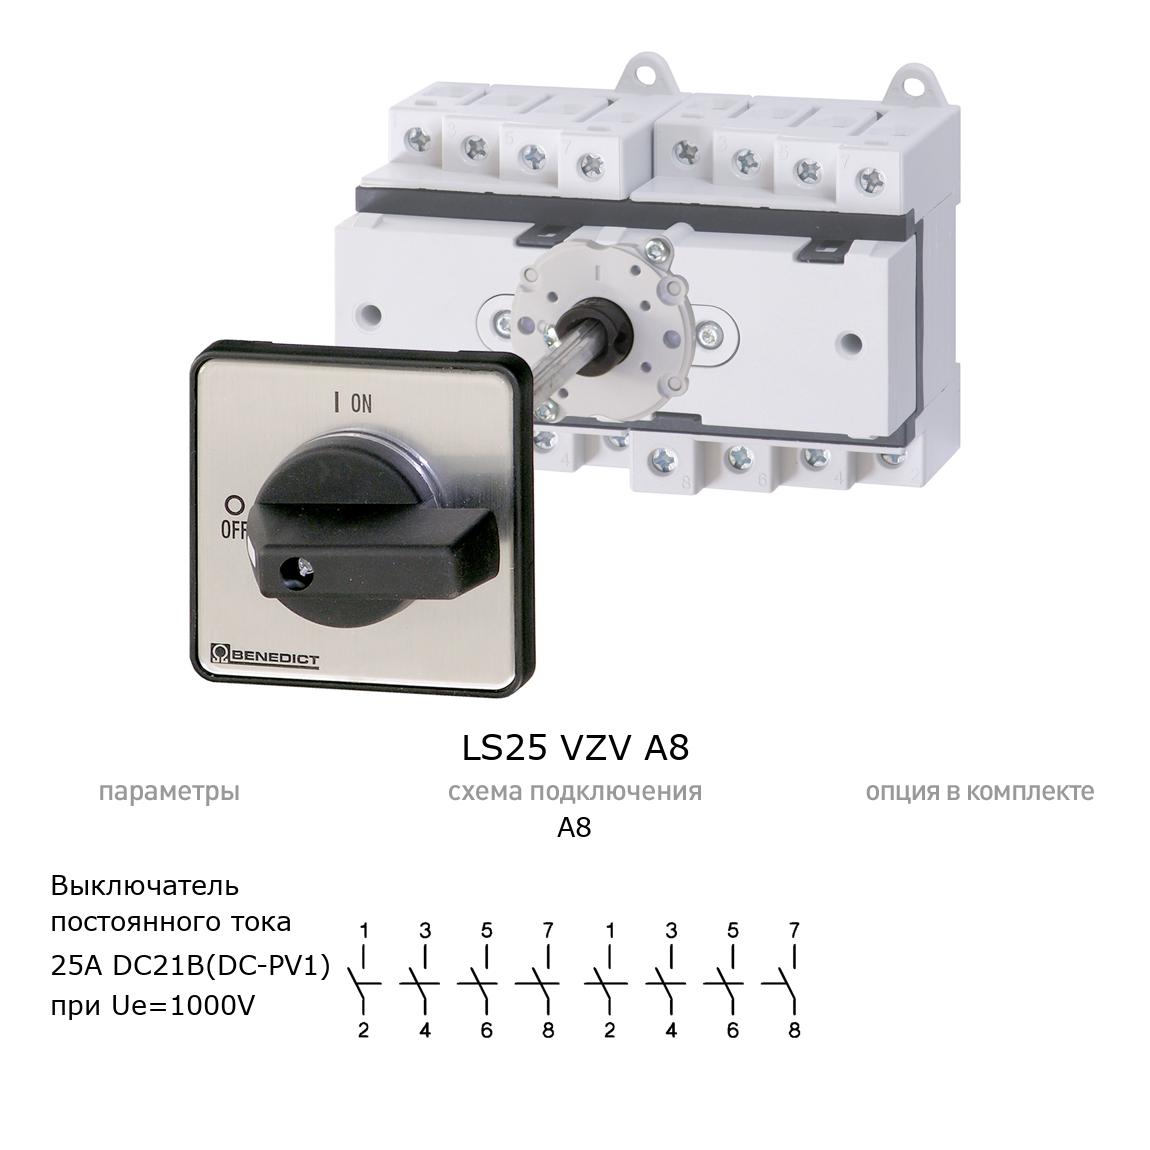 Кулачковый переключатель для постоянного тока (DC) LS25 VZV A8 BENEDICT